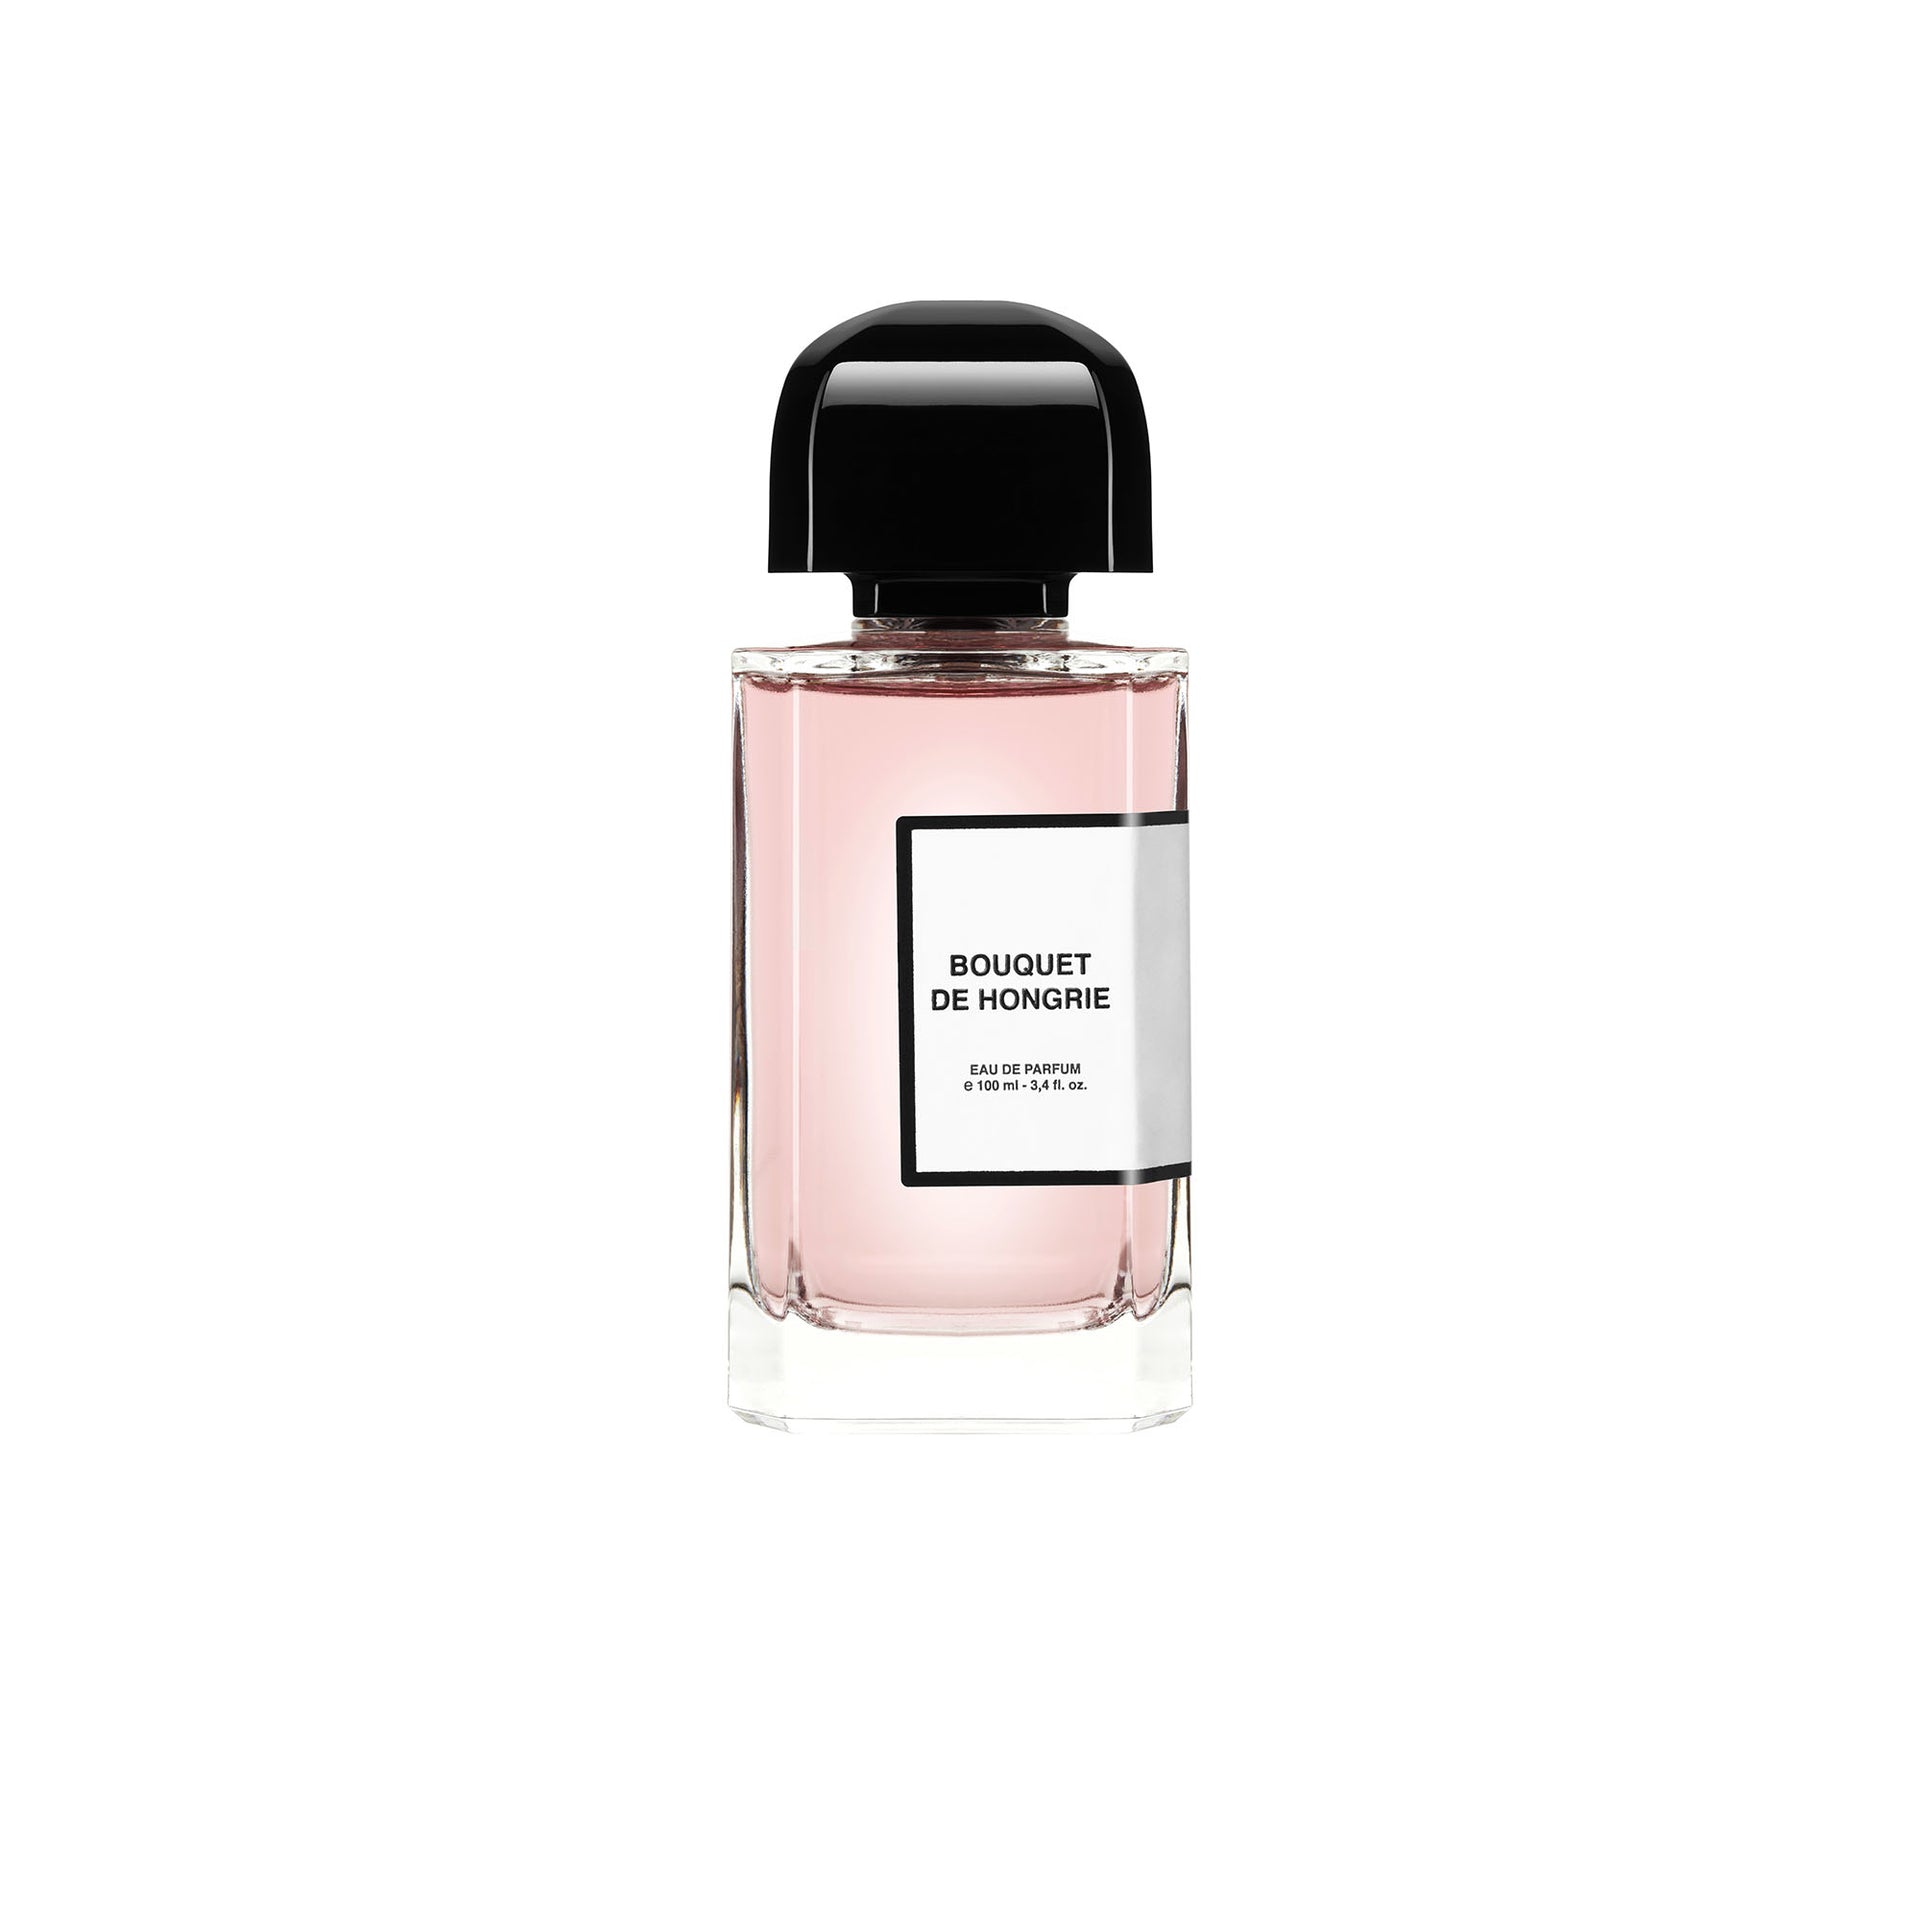 Chanel Chance, Eau Fraiche and Eau Tendre : Fragrance Reviews - Bois de  Jasmin